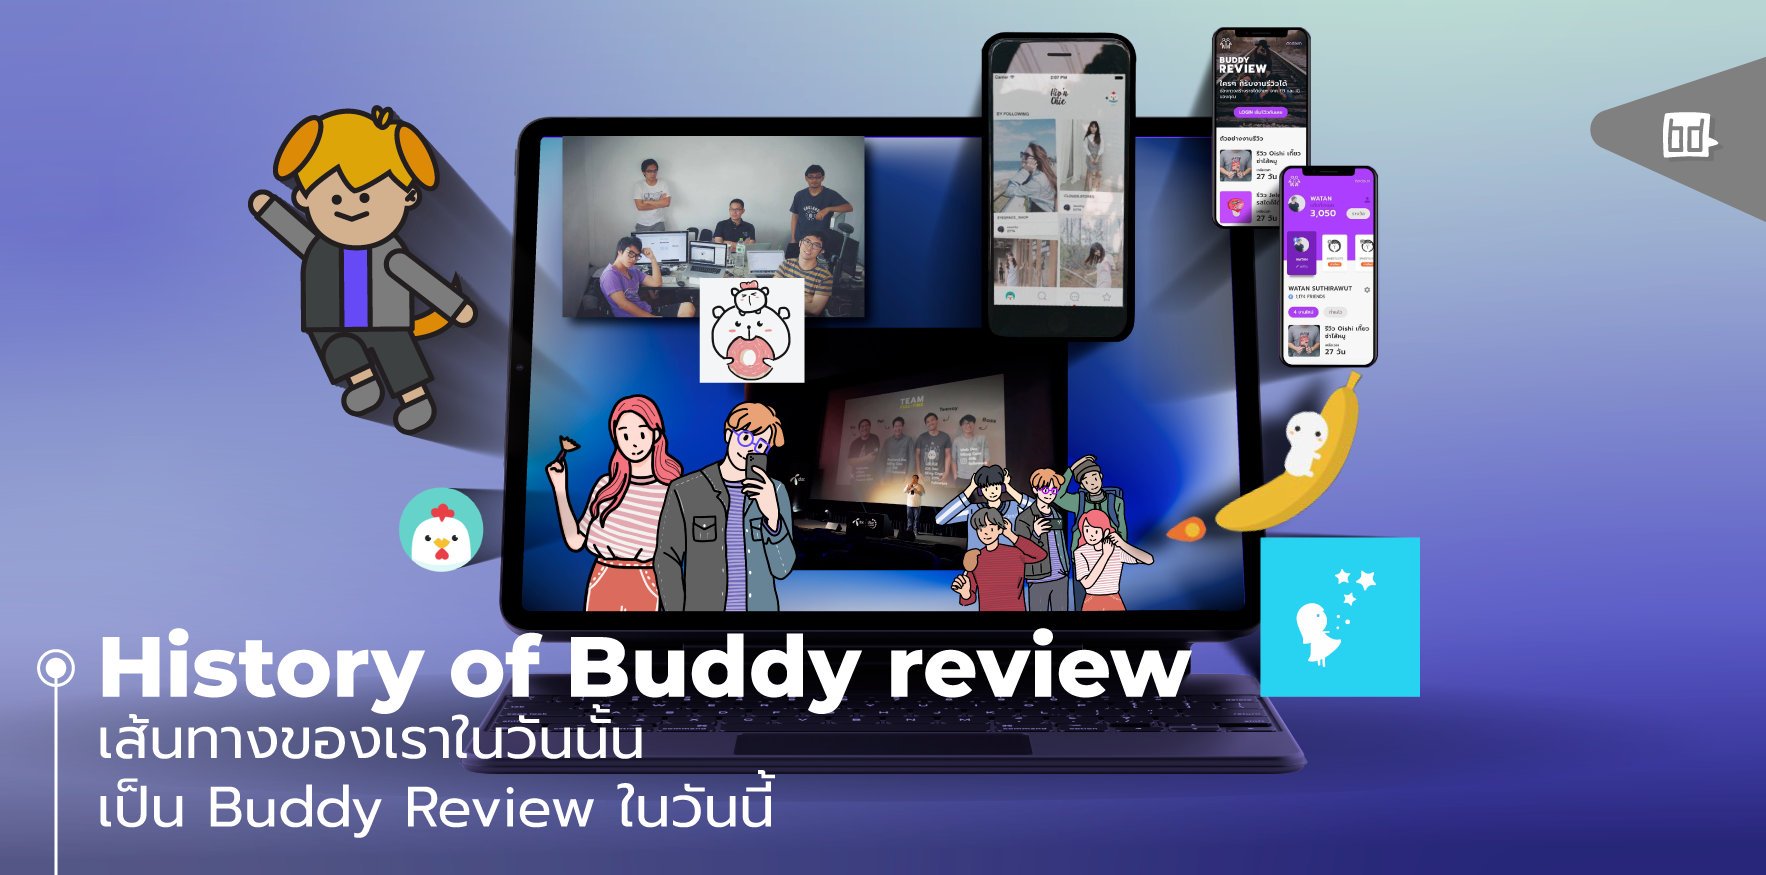 History of Buddy review เส้นทางของเราเป็นอย่างไรกว่าจะเป็น Buddy Review ในวันนี้